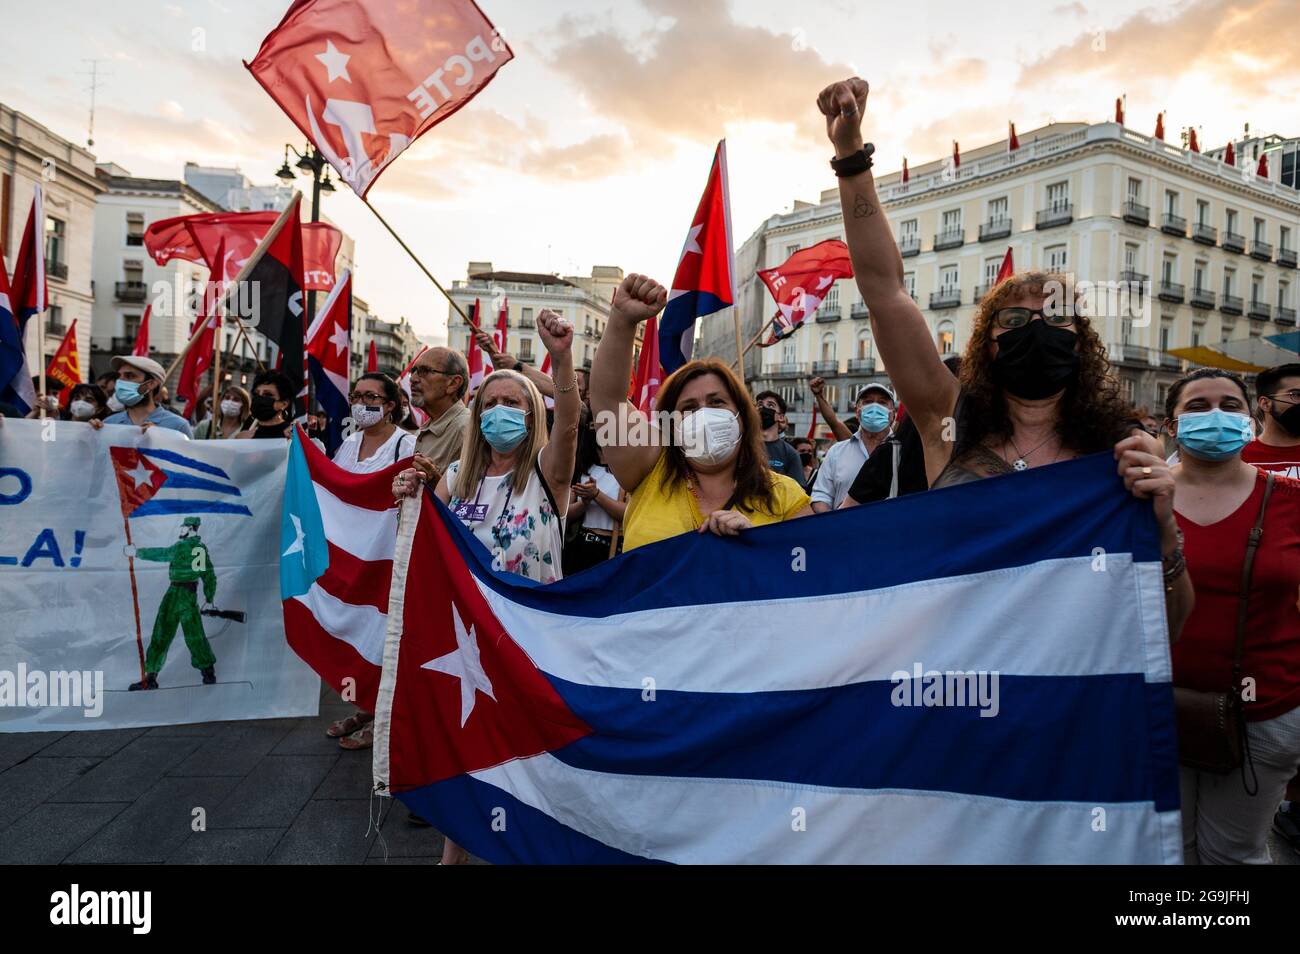 Madrid, Spagna. 26 luglio 2021. Manifestanti con bandiere cubane che alzano le armi durante una manifestazione contro l’embargo economico statunitense su Cuba, in coincidenza con il 26 luglio, giorno in cui la rivoluzione cubana è iniziata nel 1953, 68 anni fa. Credit: Marcos del Mazo/Alamy Live News Foto Stock